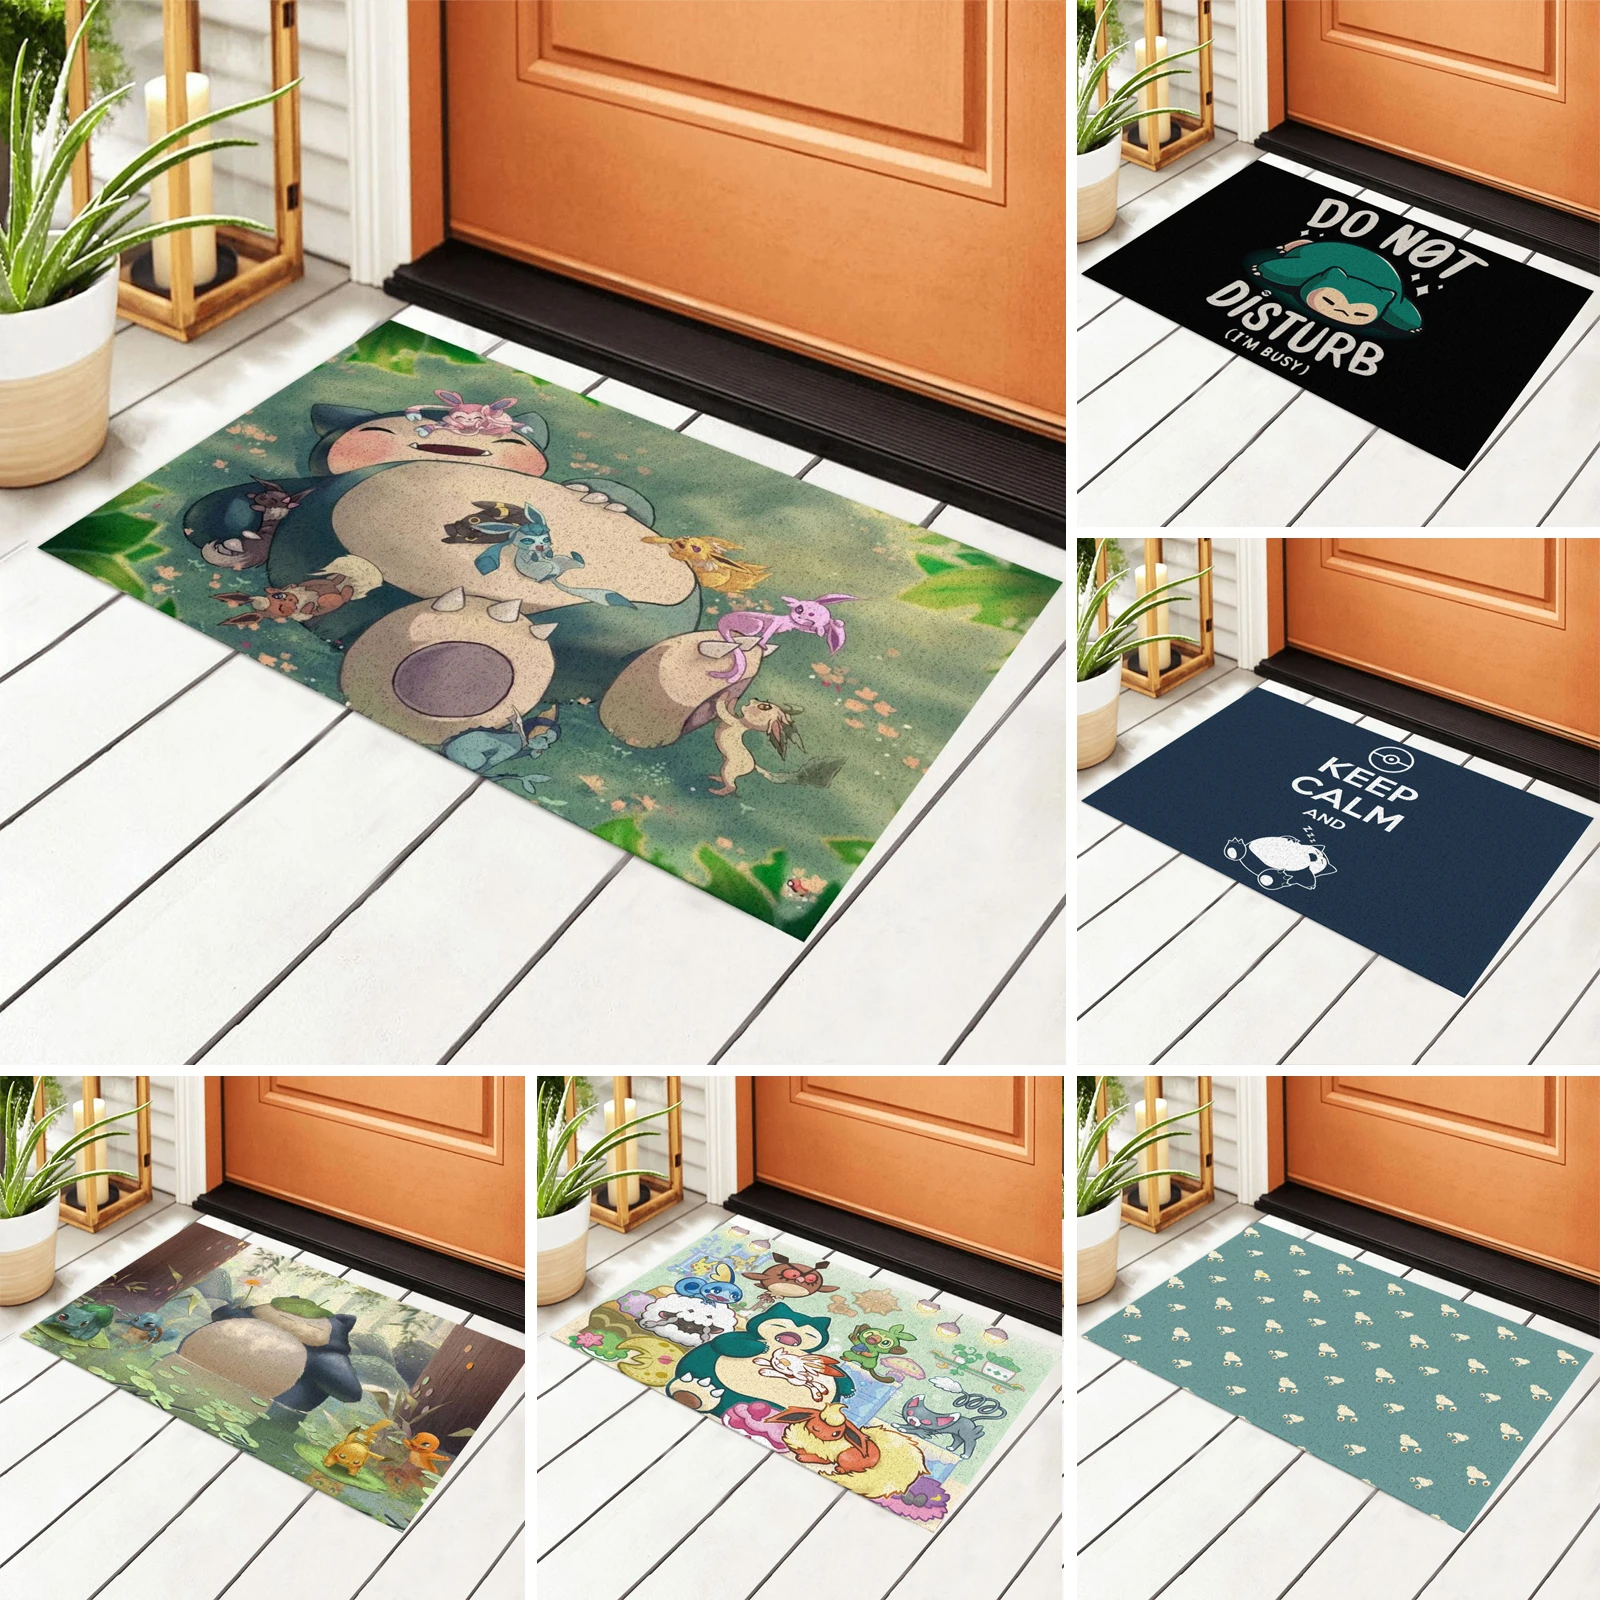 

Anime Snorlax Front Door Welcome Mat Heavy Duty Welcome Doormat for Indoor Outdoor Rug Entryway Mats, 15.7x23.6in